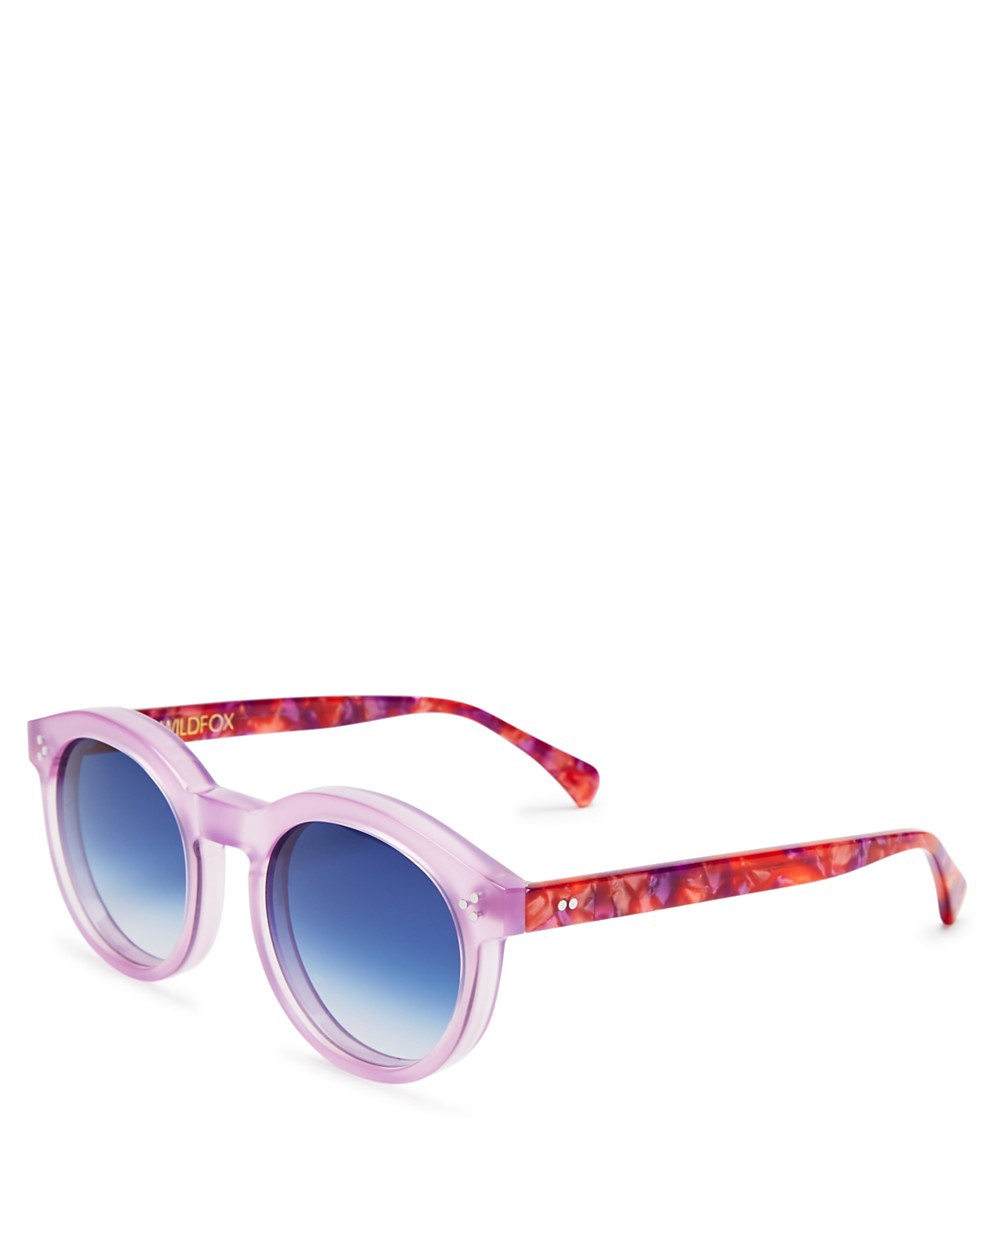 Wildfox Harper Sunglasses, 54mm In Wildflower/blue Gradient | ModeSens